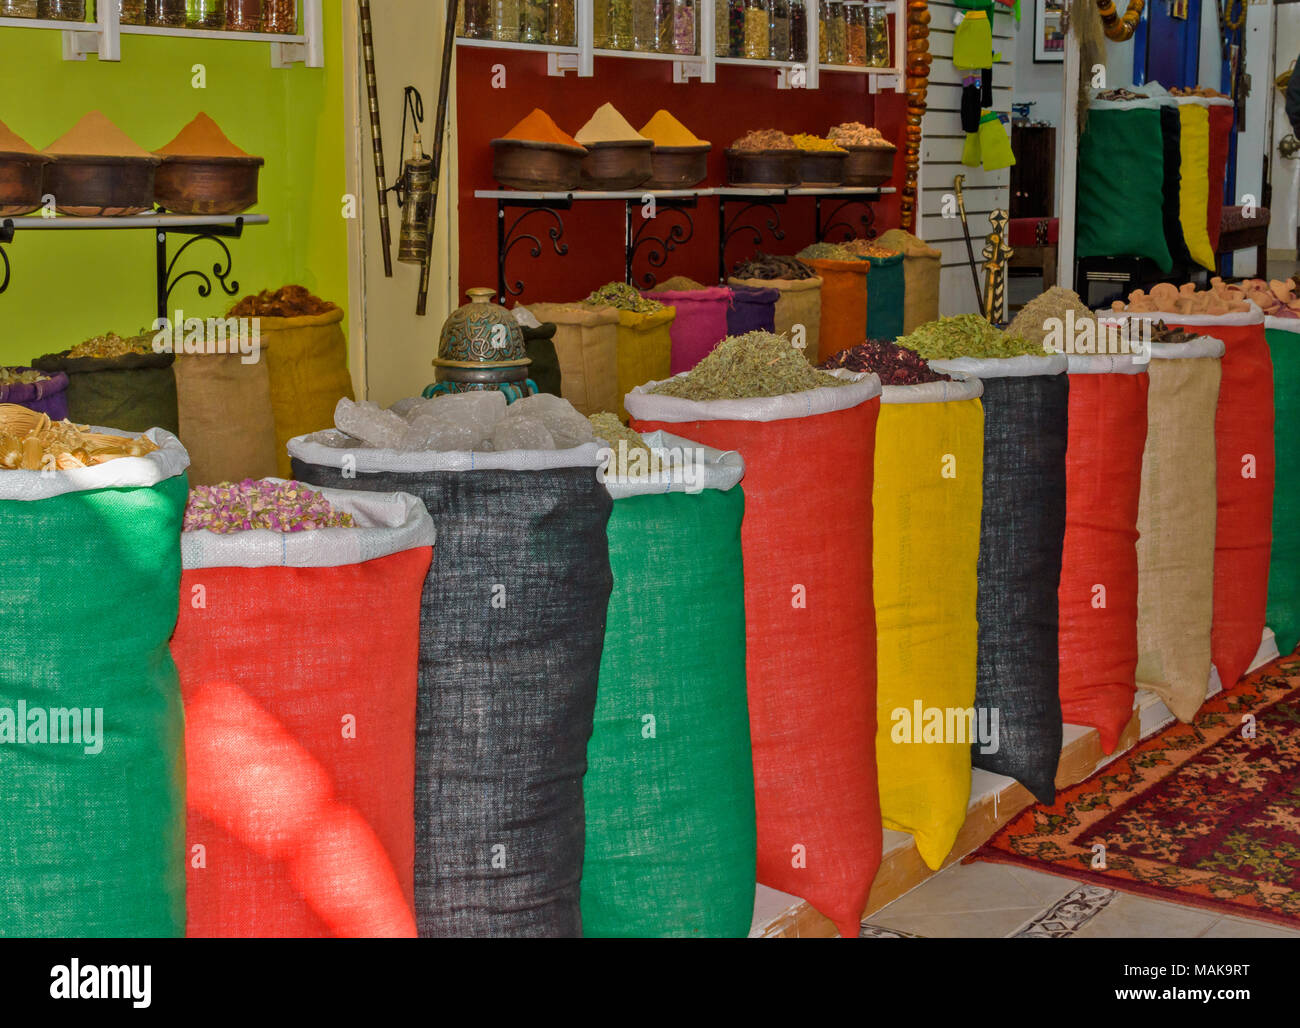 Il Marocco Marrakech Jemaa el Fna MEDINA SOUK ASSORTIMENTO DI SPEZIE IN SACCHI colorati per la vendita Foto Stock